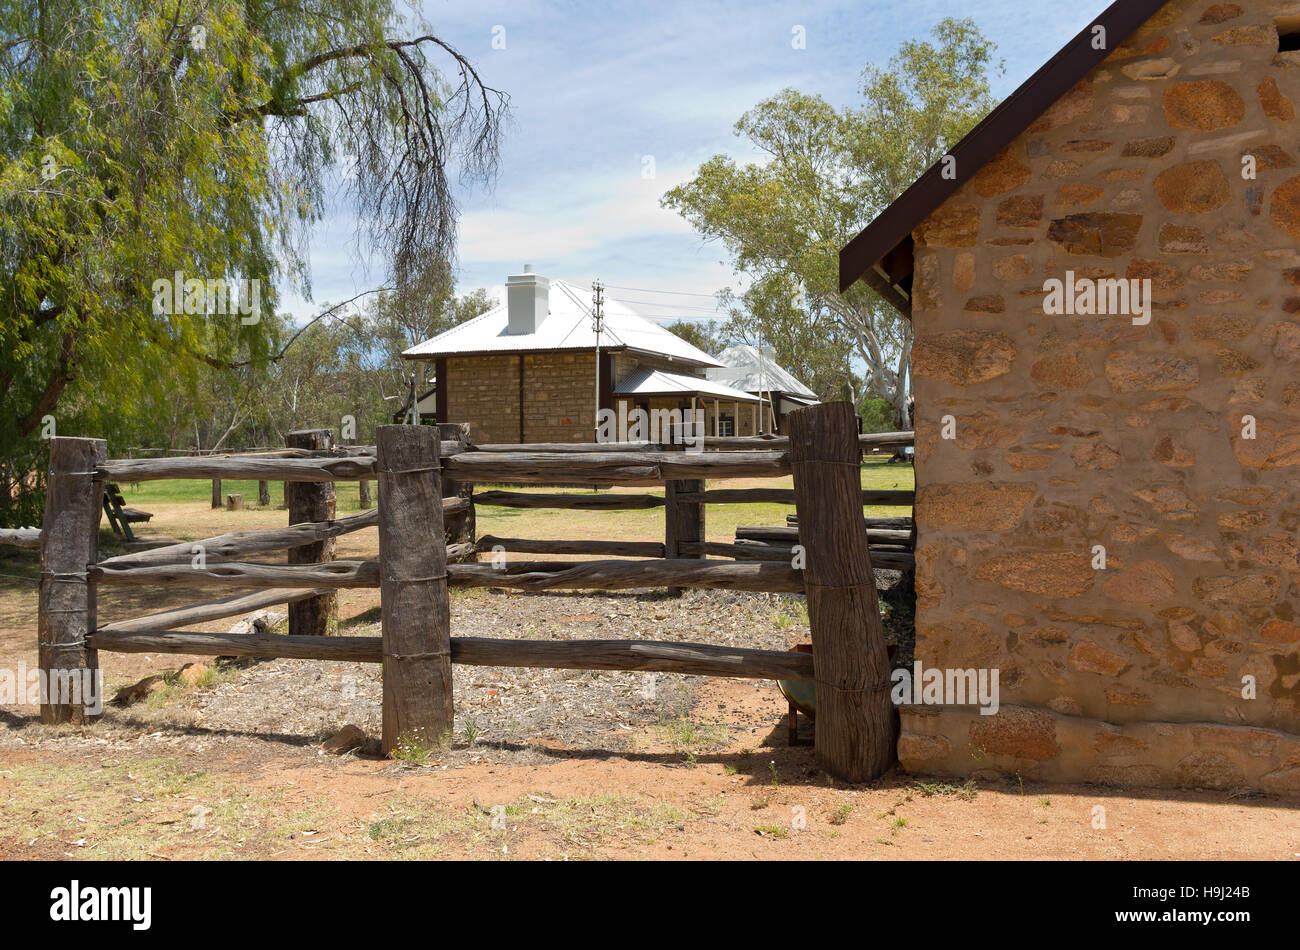 Hof und Telegraph Office am historischen Bahnhof in Alice Springs Nordterritorium Australiens Hufbeschlag Stockfoto